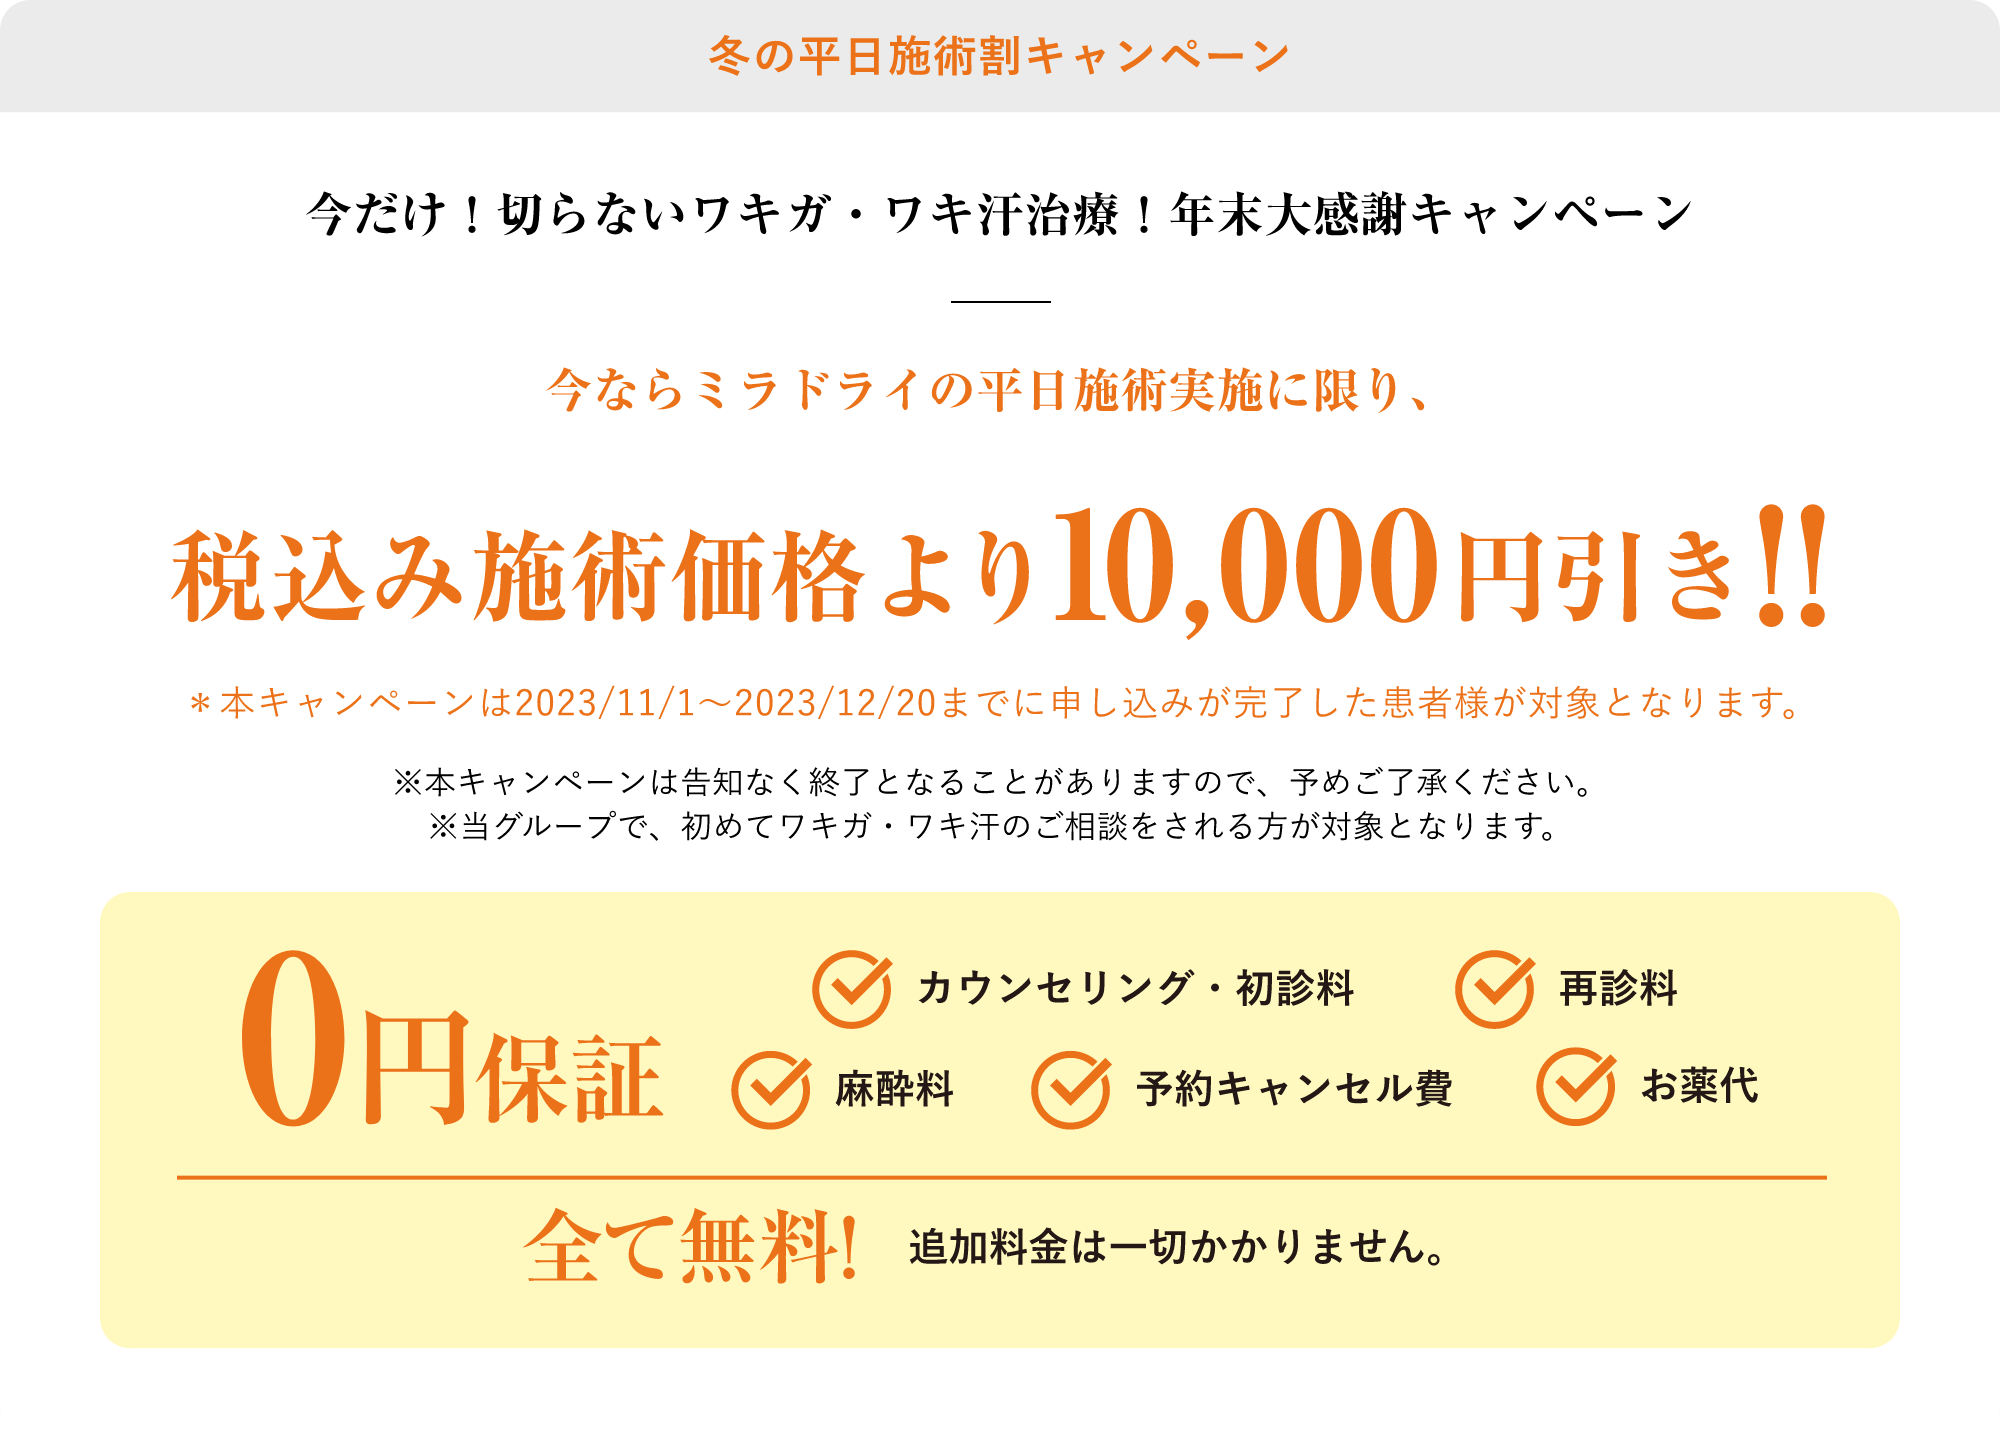 冬の応援キャンペーン今ならミラドライのスタンダードプランが税込み施術価格より10,000円引き!!